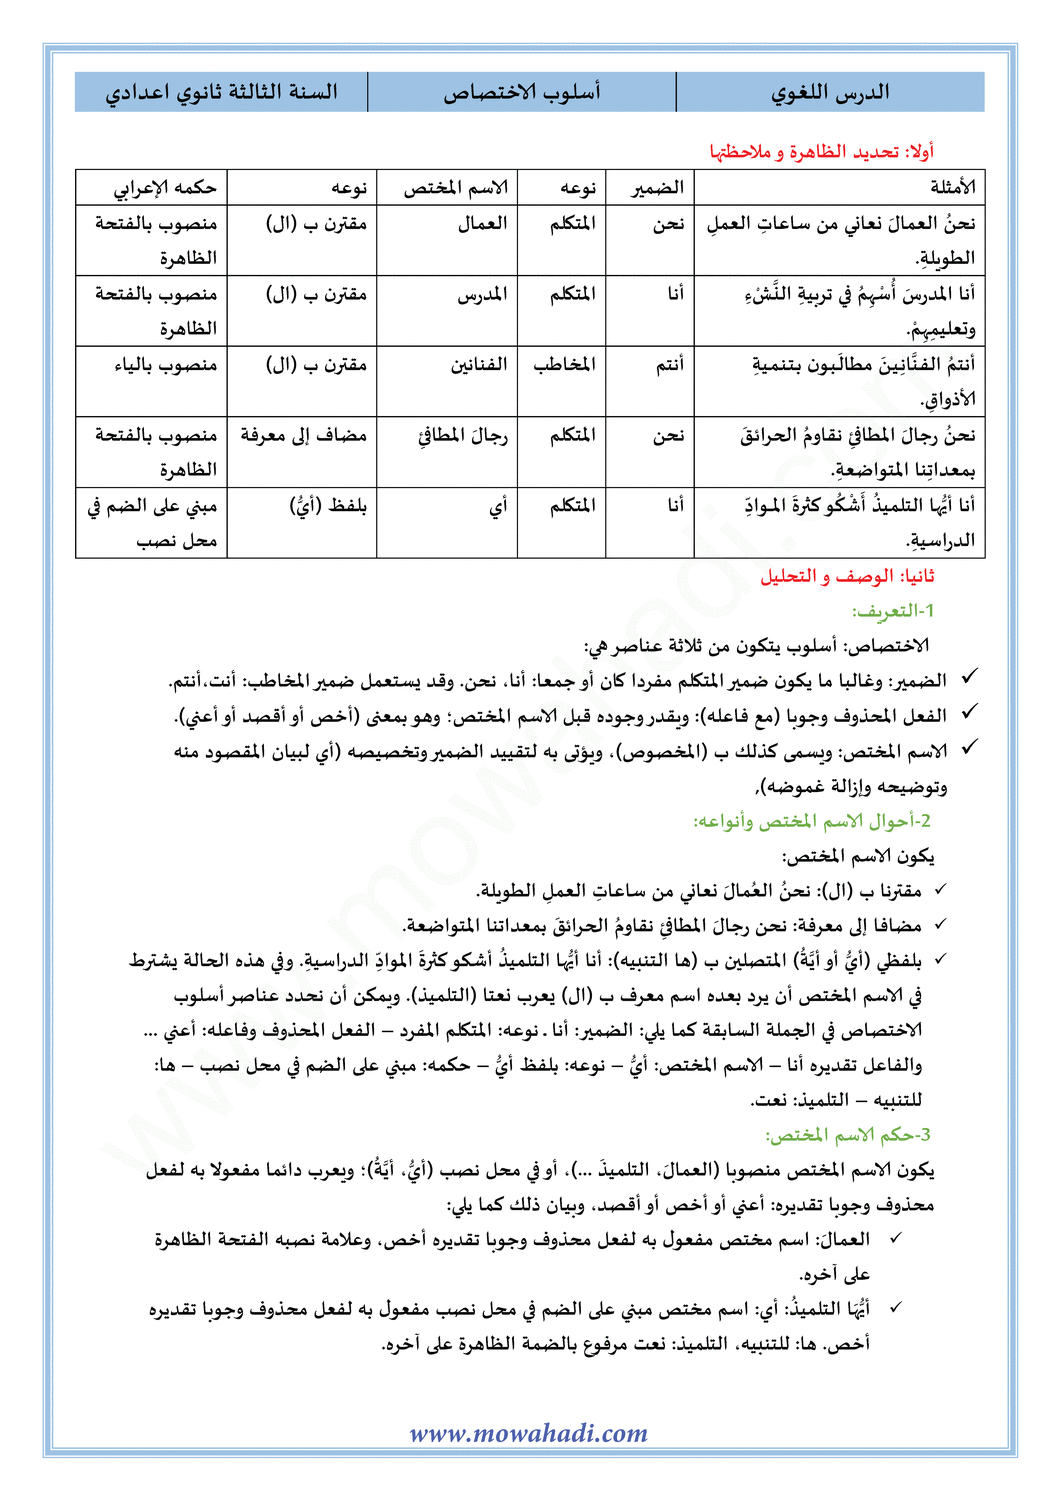 الدرس اللغوي أسلوب الاختصاص للسنة الثالثة اعدادي في مادة اللغة العربية